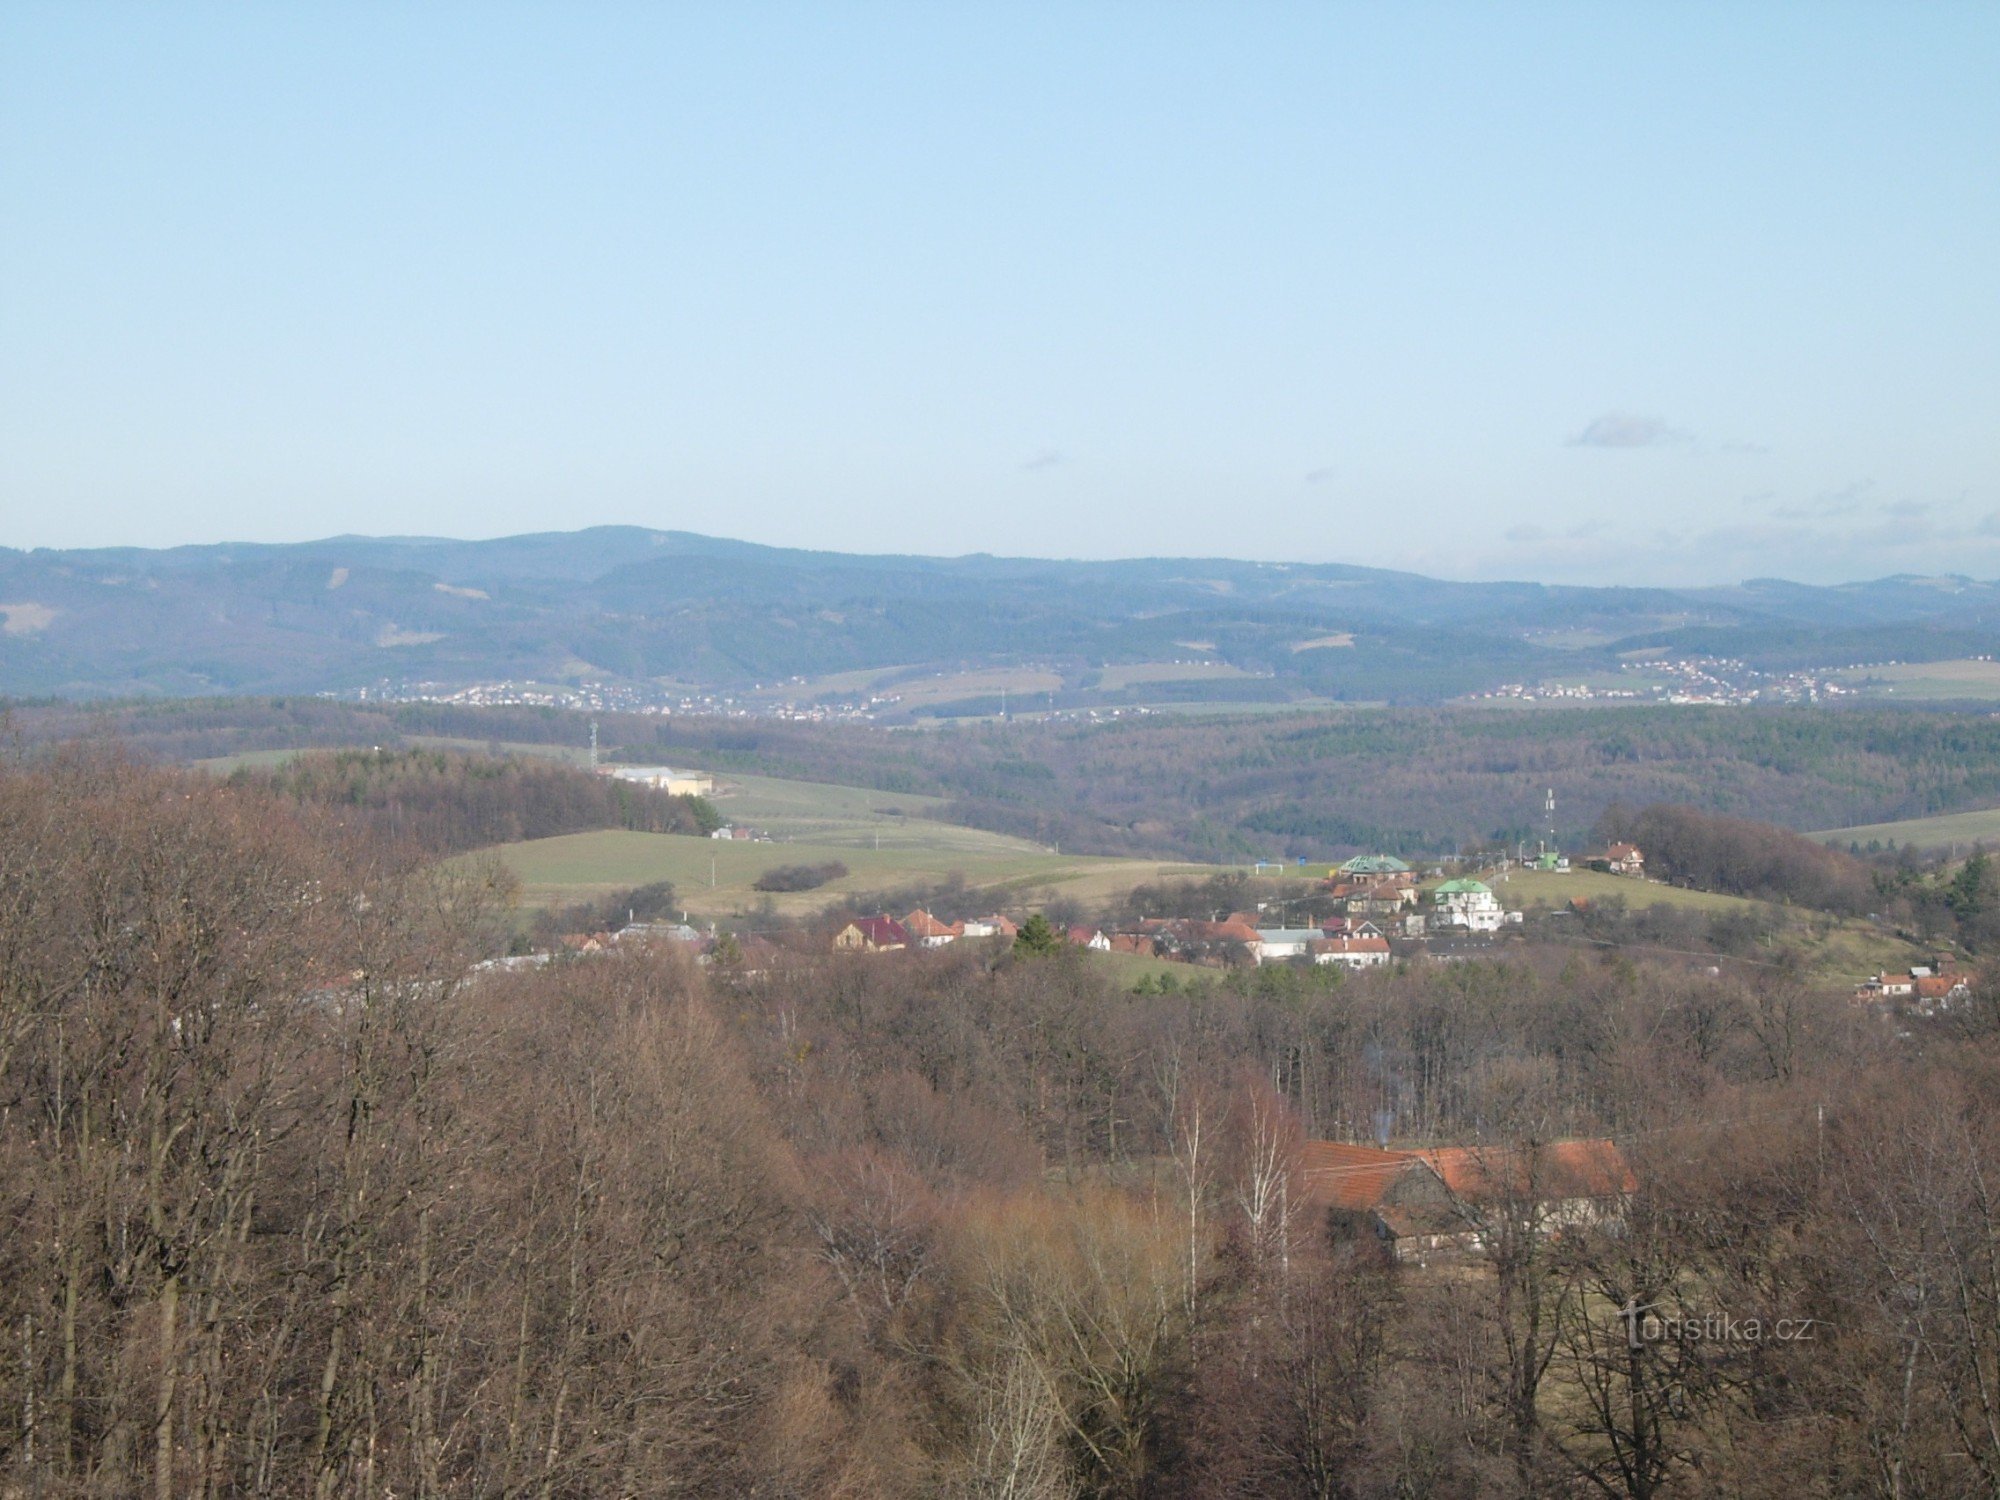 背景是 Hostýnská vrchy，前景是 Jaroslavice 村